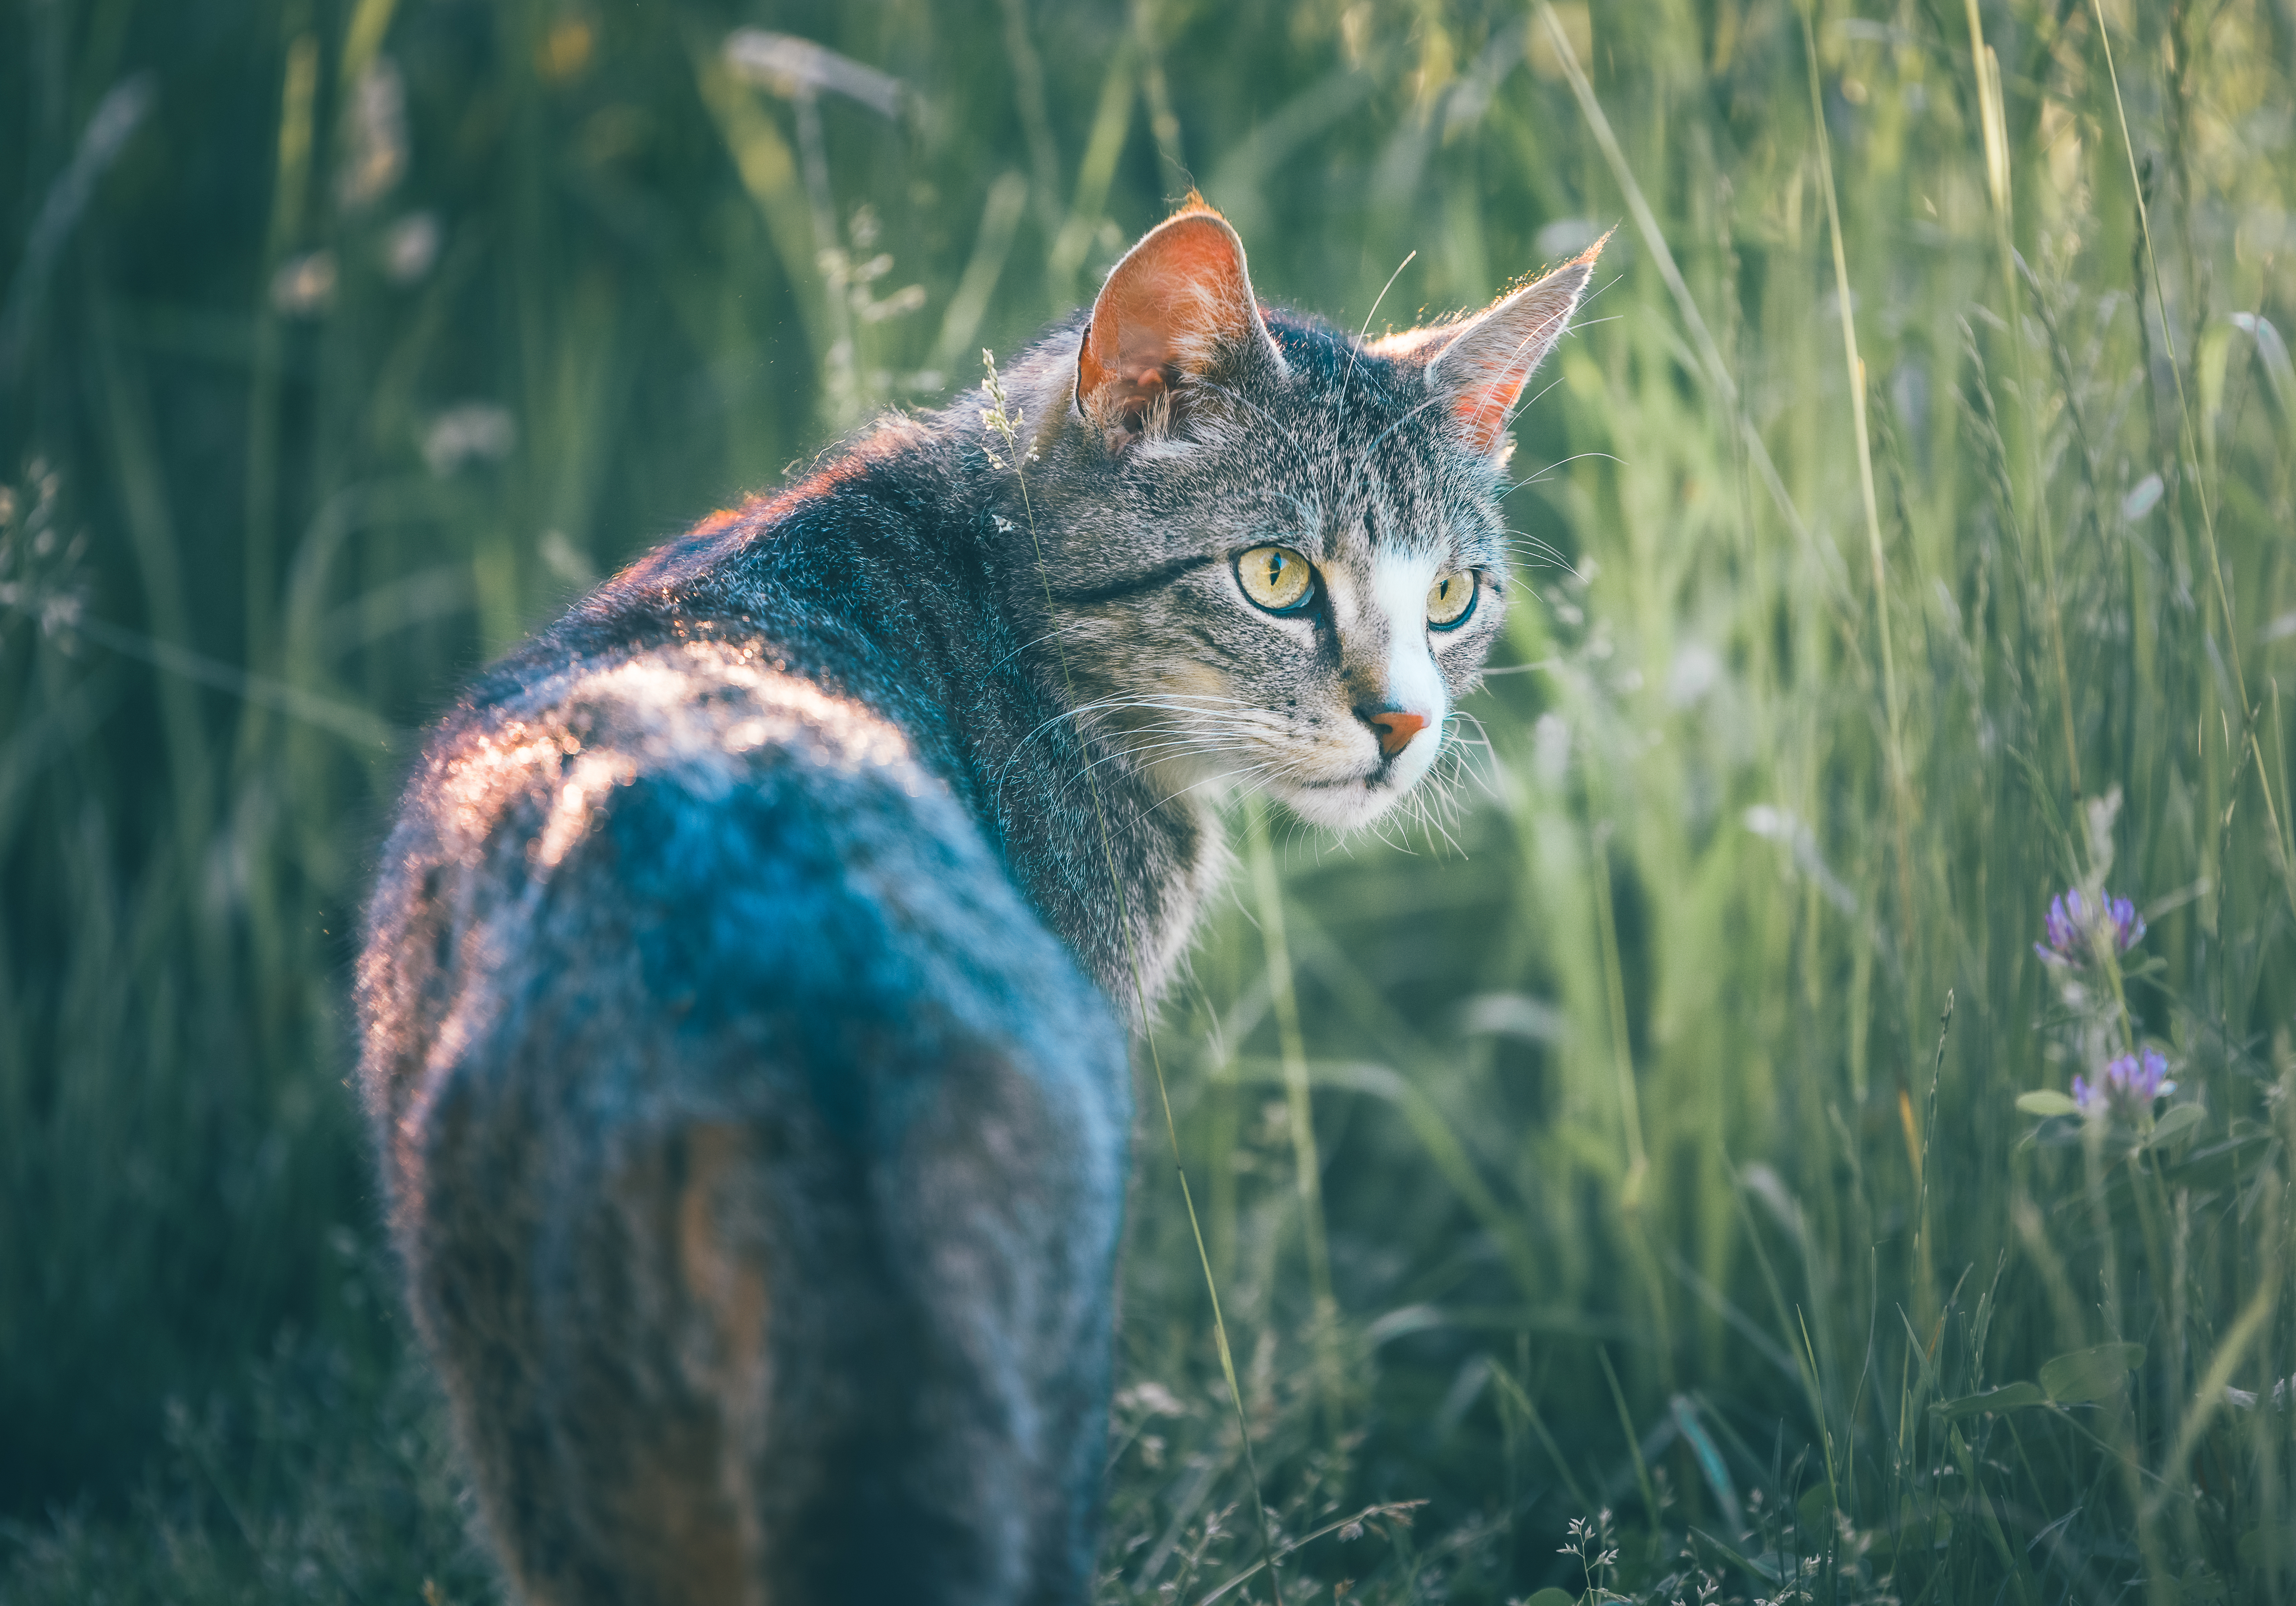 Cat walking in tall grass.